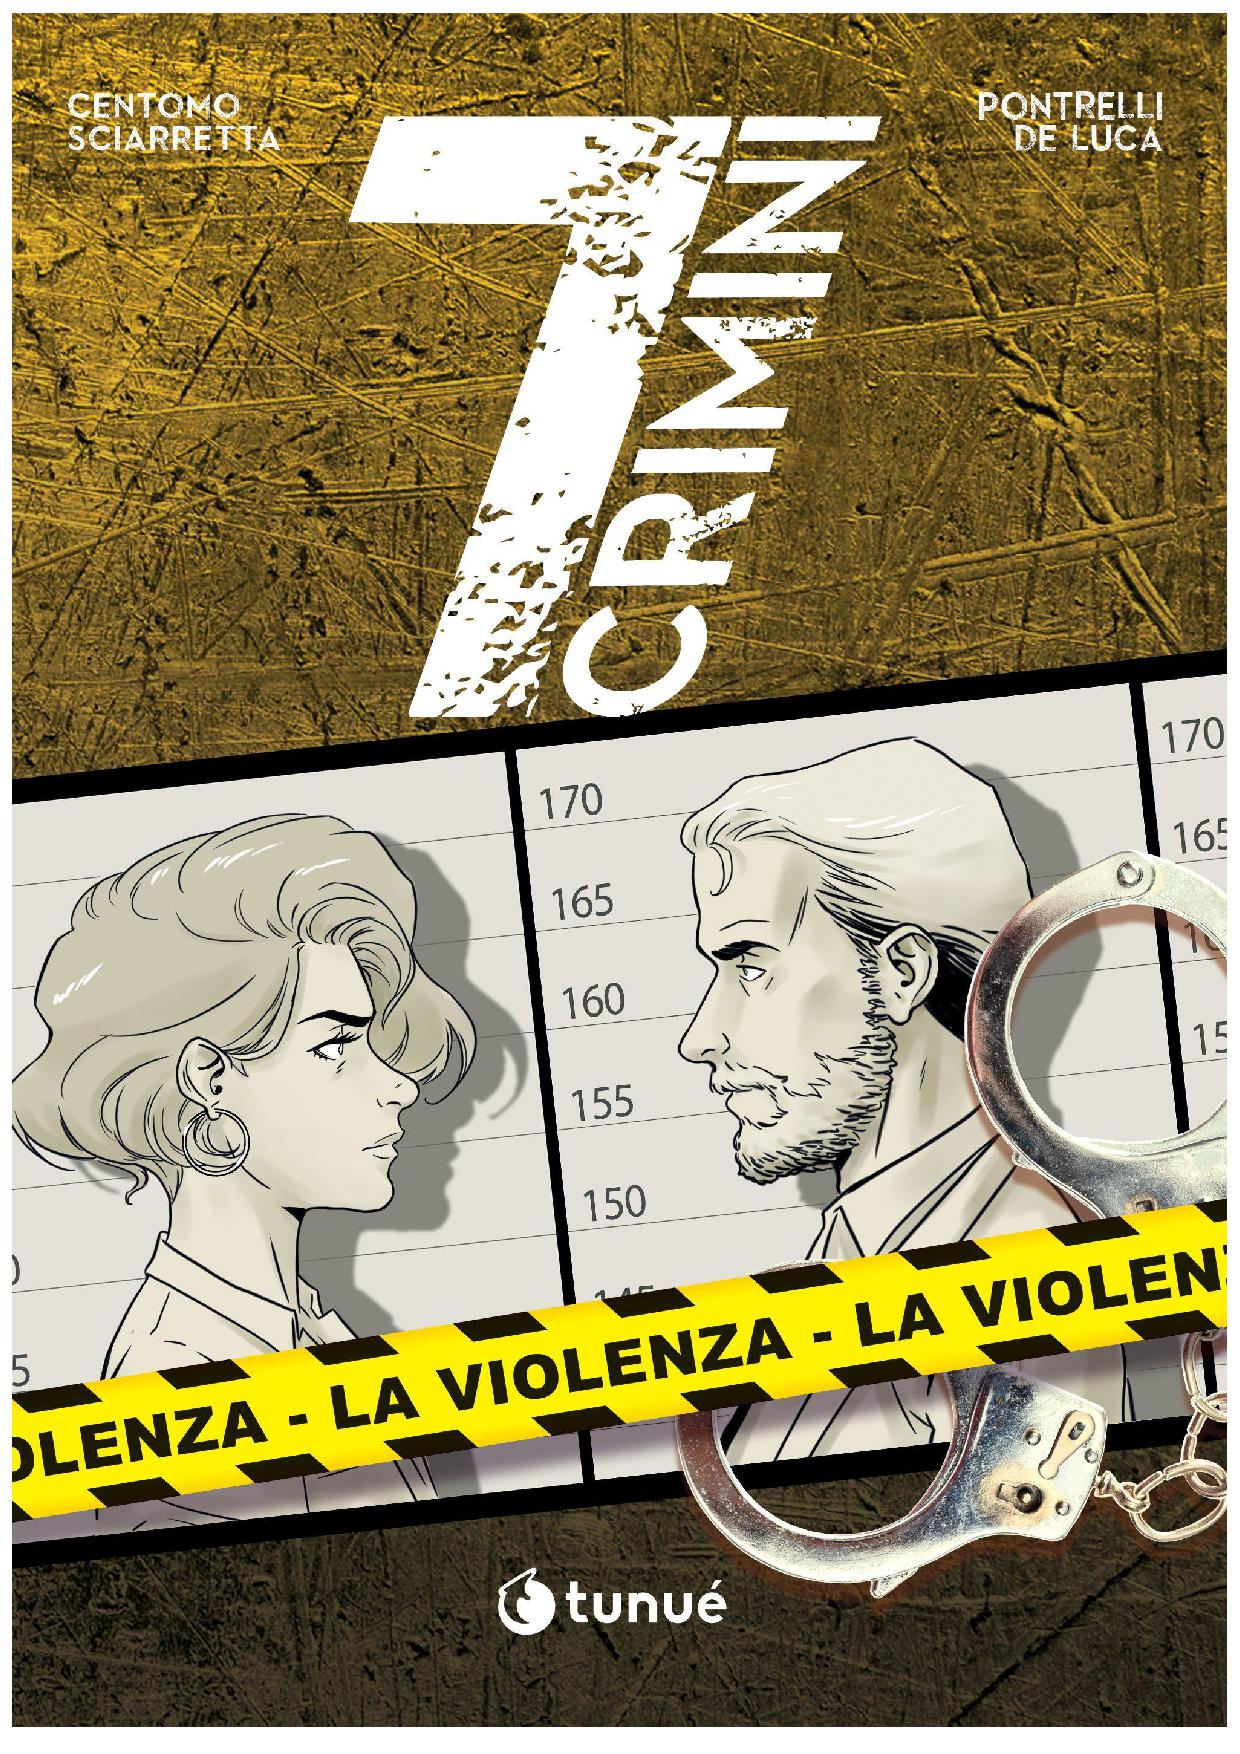 7 Crimini la violenza, la recensione tenue